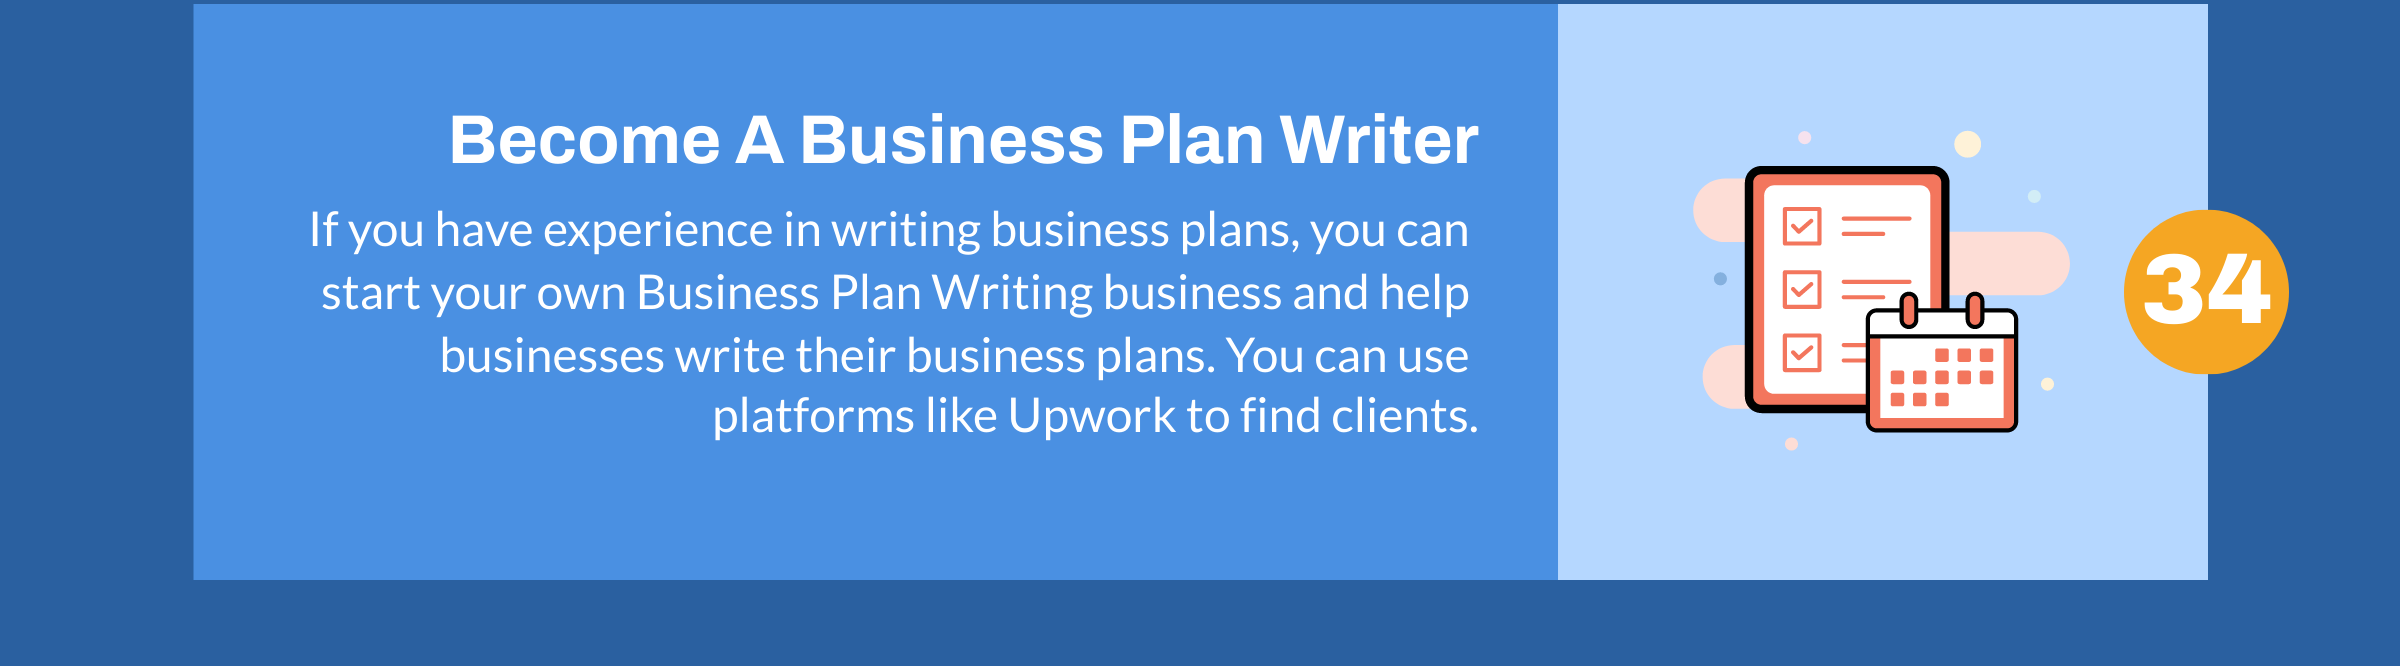 Deveniți un redactor de planuri de afaceri